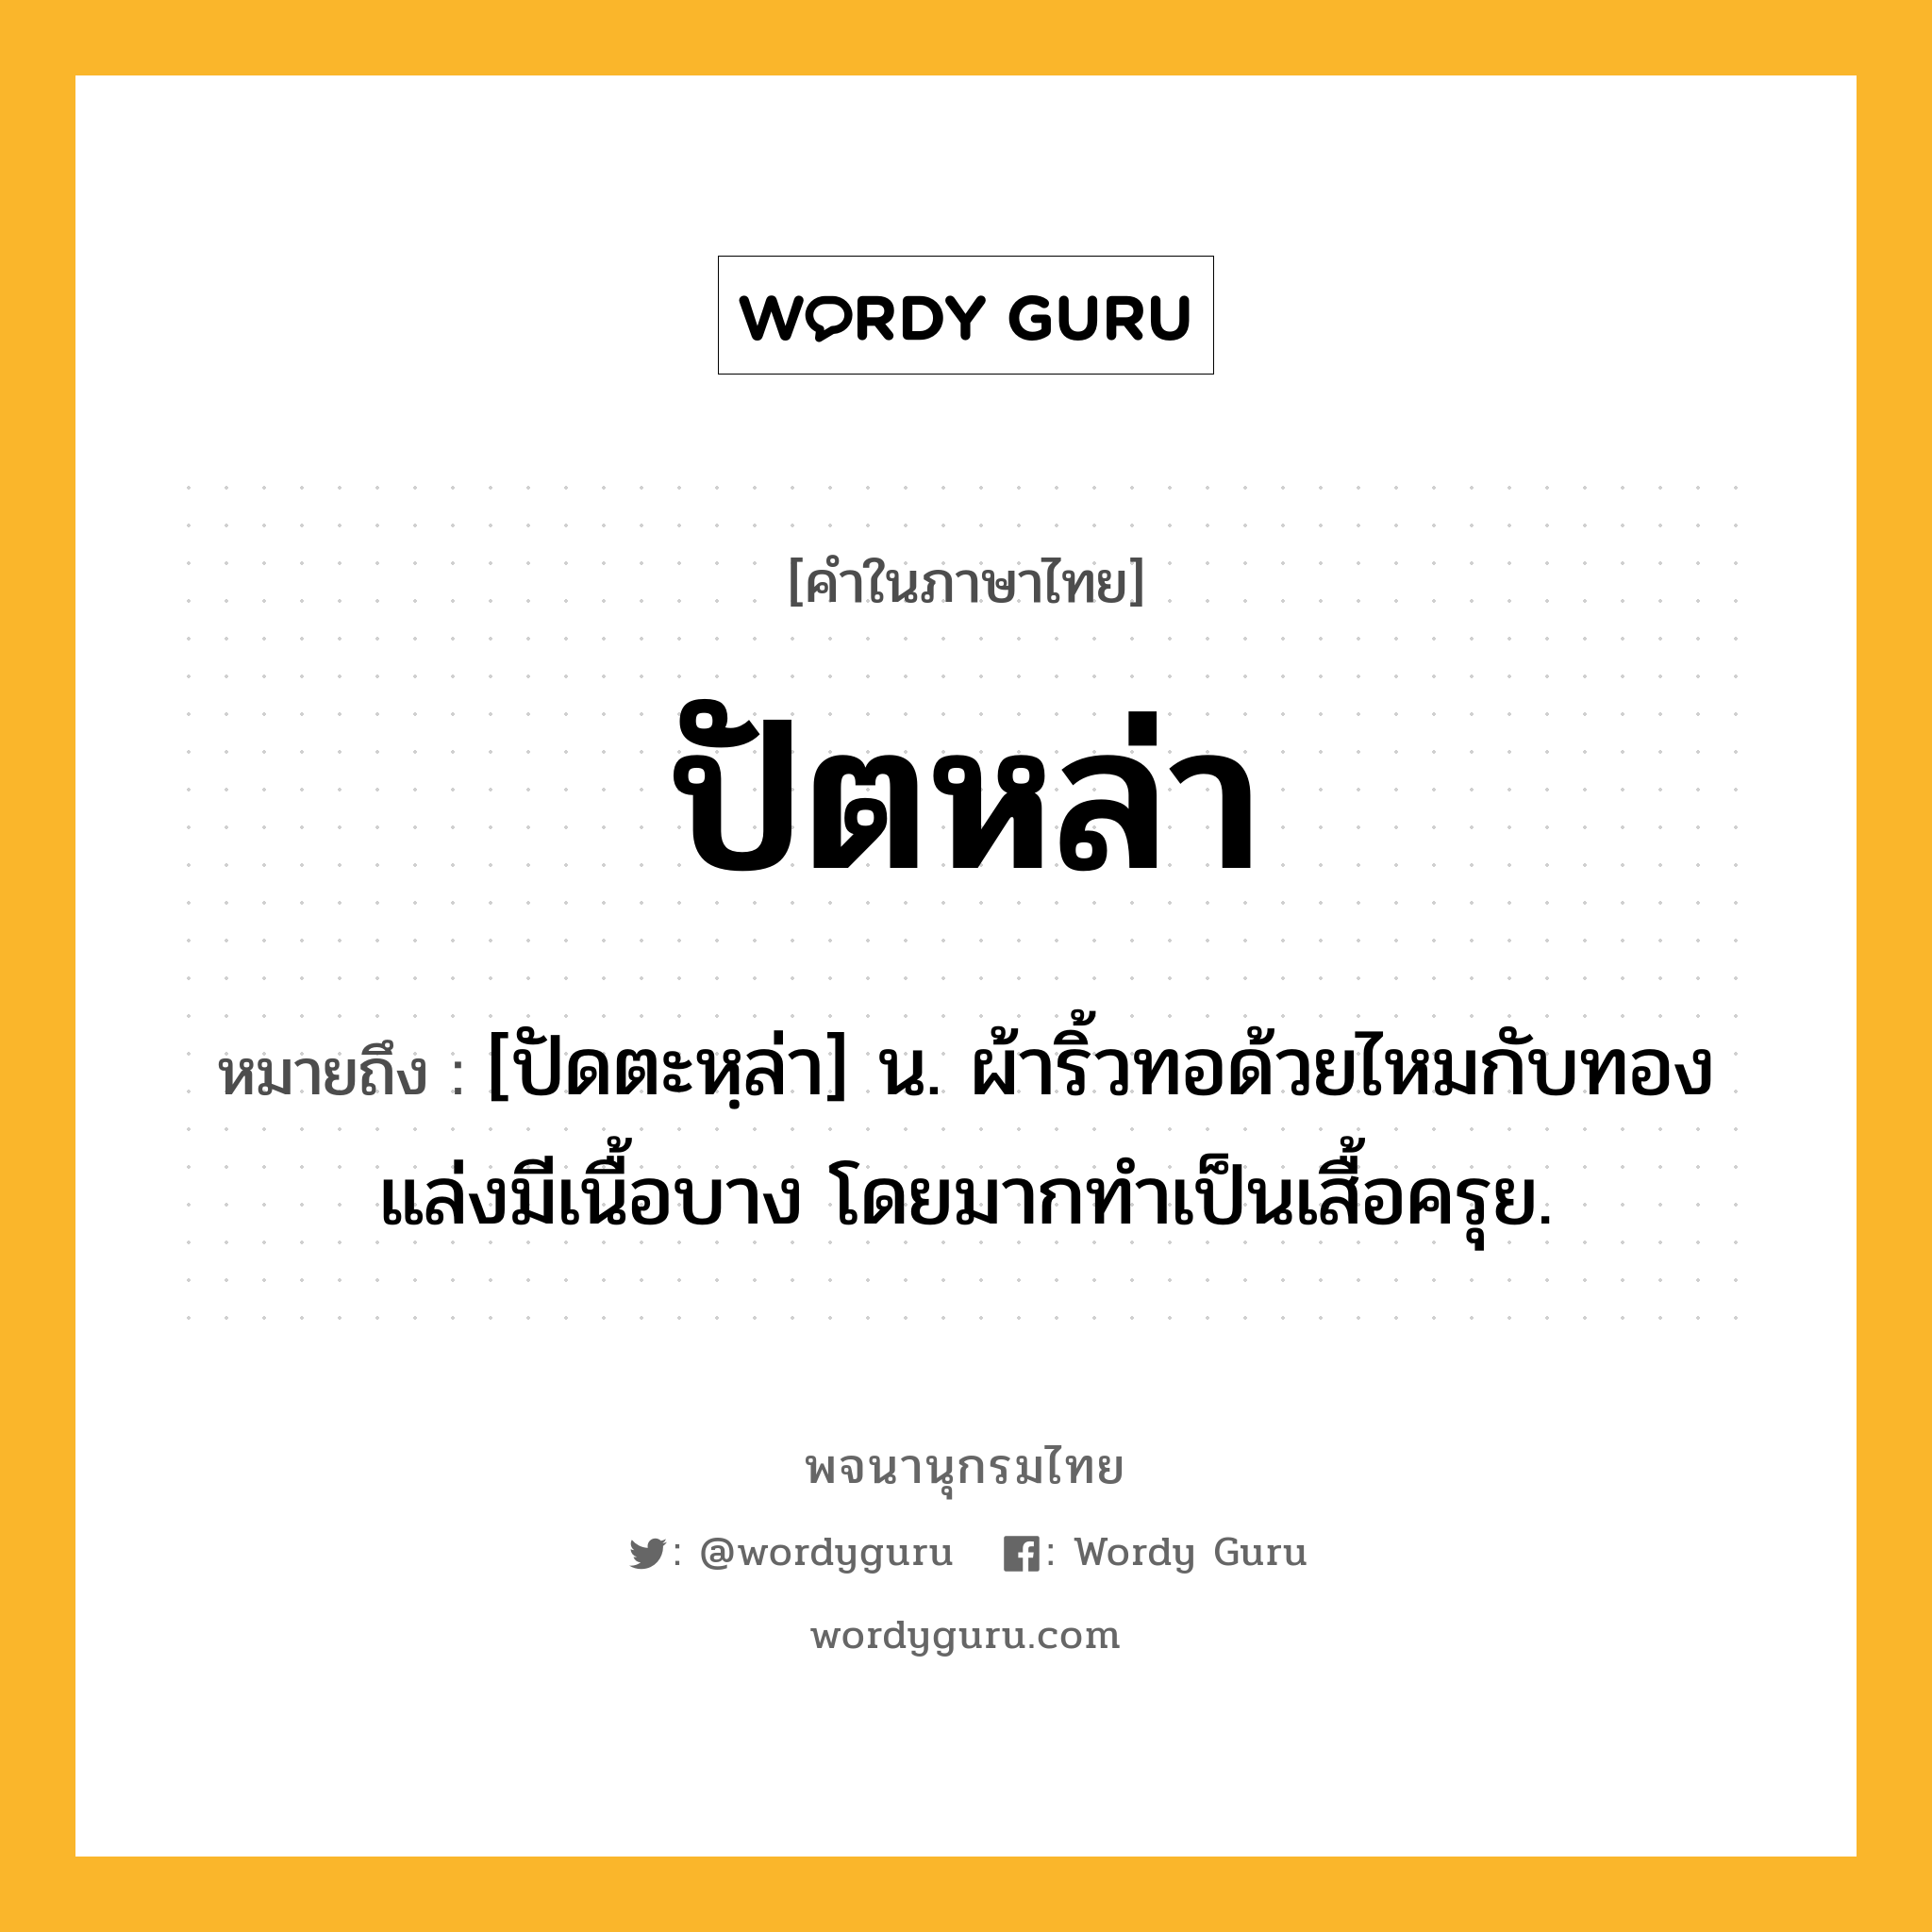 ปัตหล่า ความหมาย หมายถึงอะไร?, คำในภาษาไทย ปัตหล่า หมายถึง [ปัดตะหฺล่า] น. ผ้าริ้วทอด้วยไหมกับทองแล่งมีเนื้อบาง โดยมากทําเป็นเสื้อครุย.